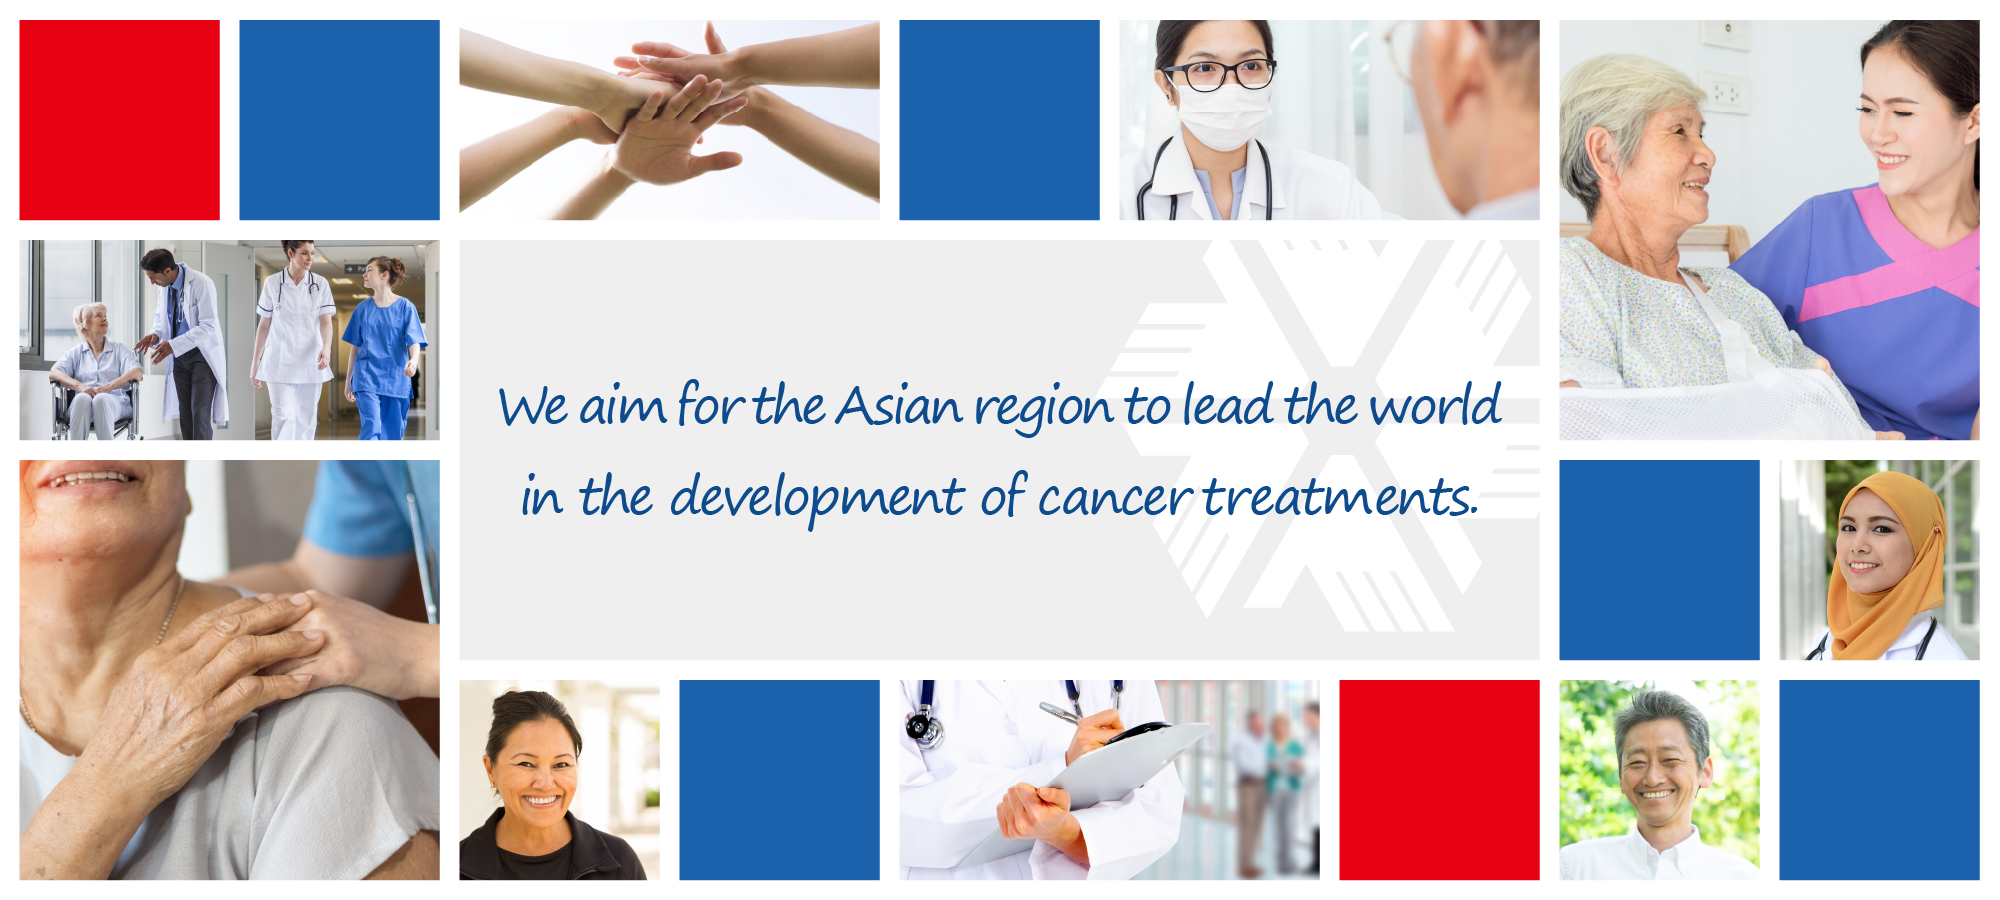 เรามุ่งหวังให้ภูมิภาคเอเชียเป็นผู้นำโลกในการพัฒนาการรักษามะเร็ง